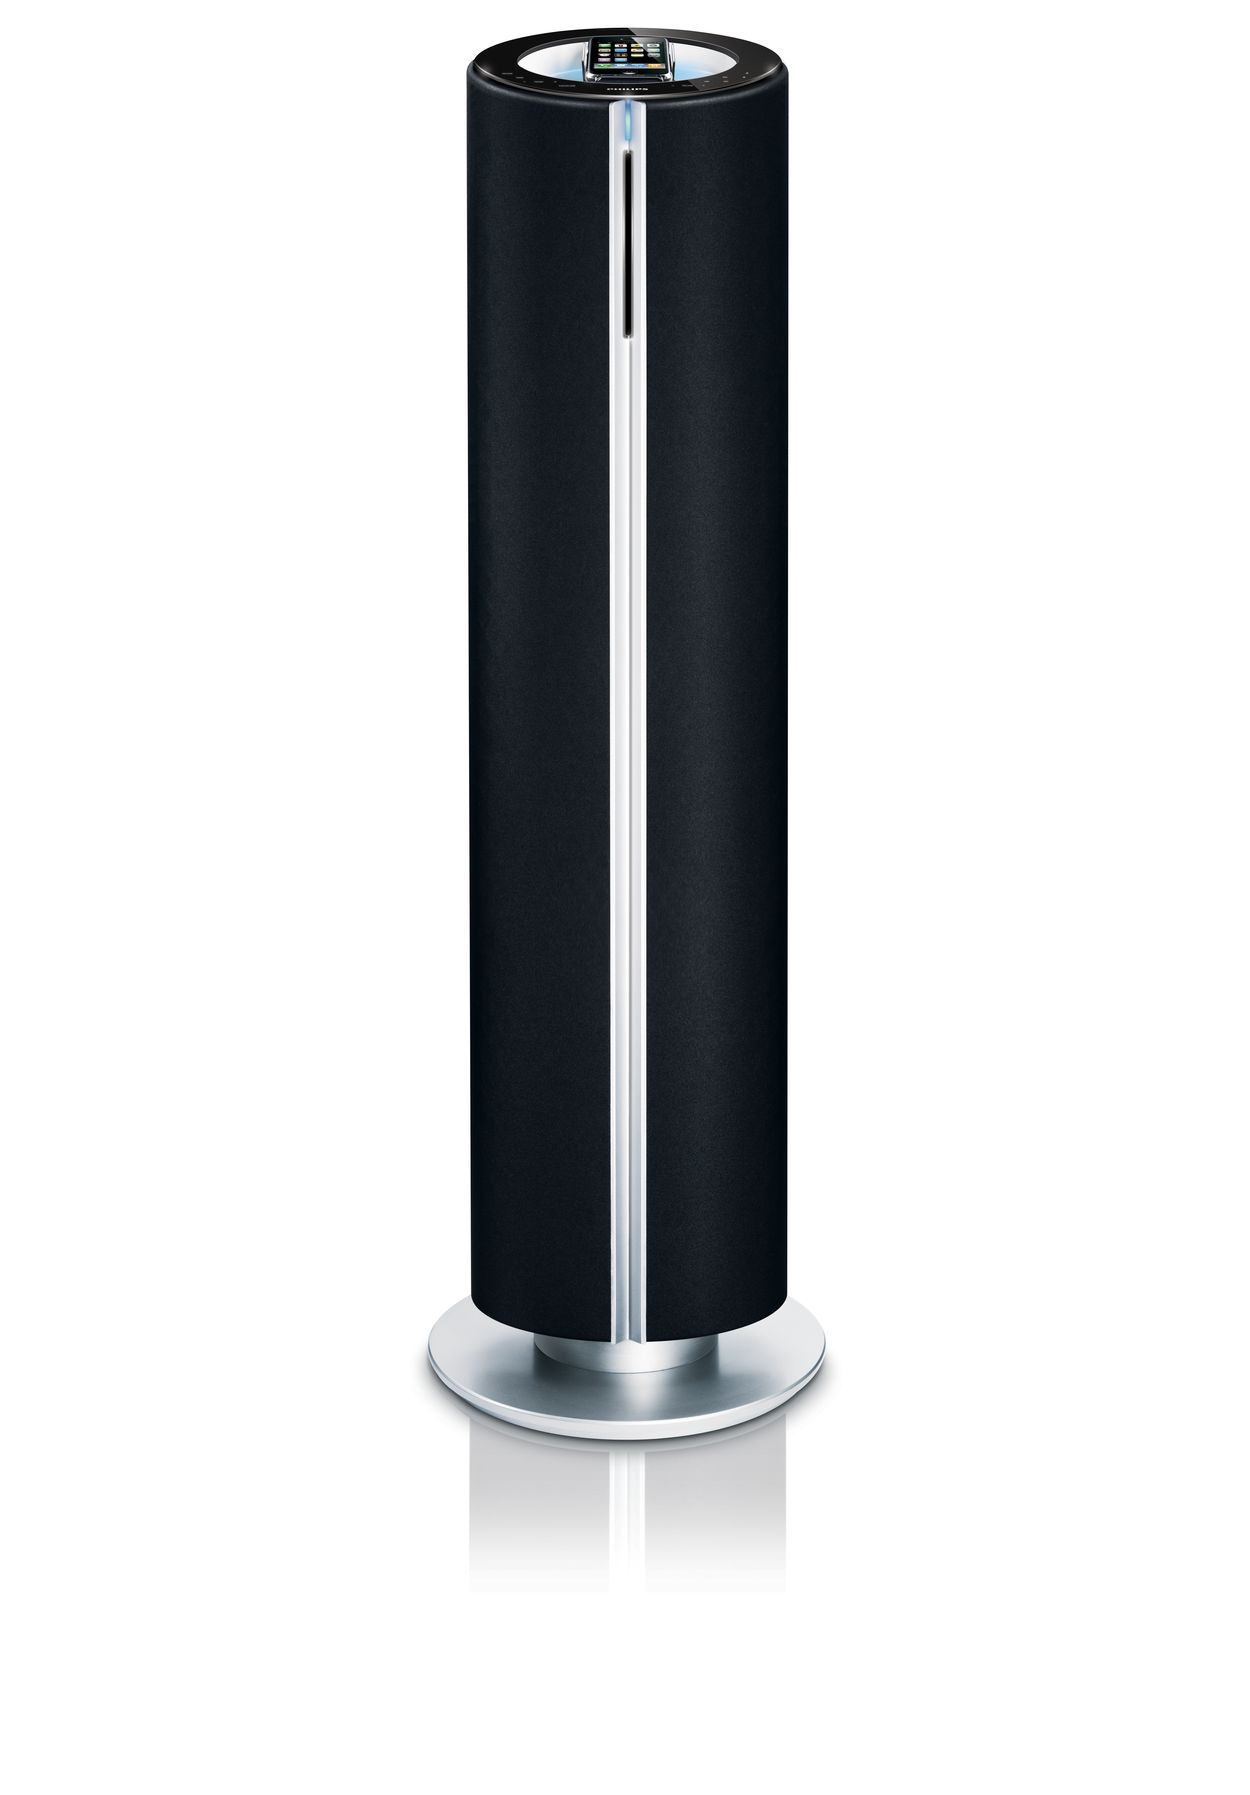 ipod tower speaker